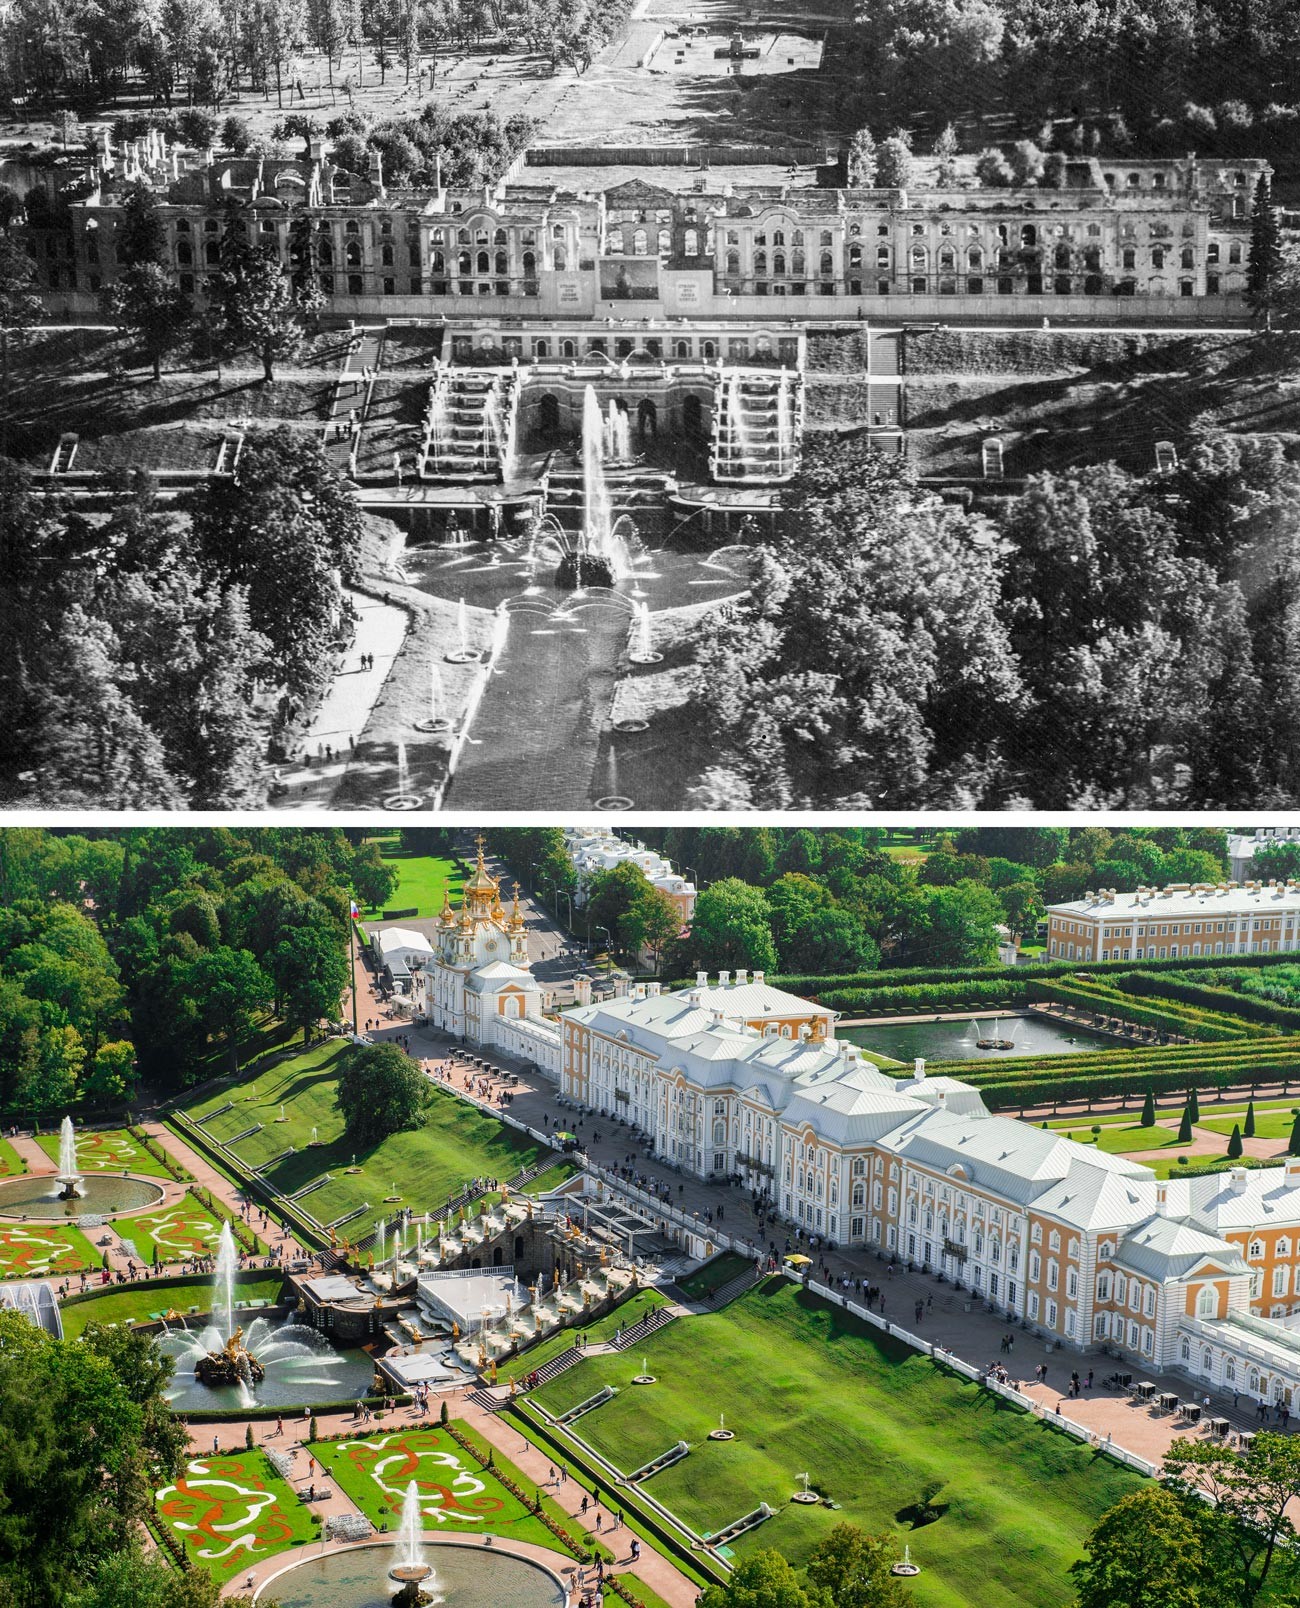 Vue sur le parc supérieur, le Grand Palais et la fontaine de la Grande Cascade en 1944 et maintenant

